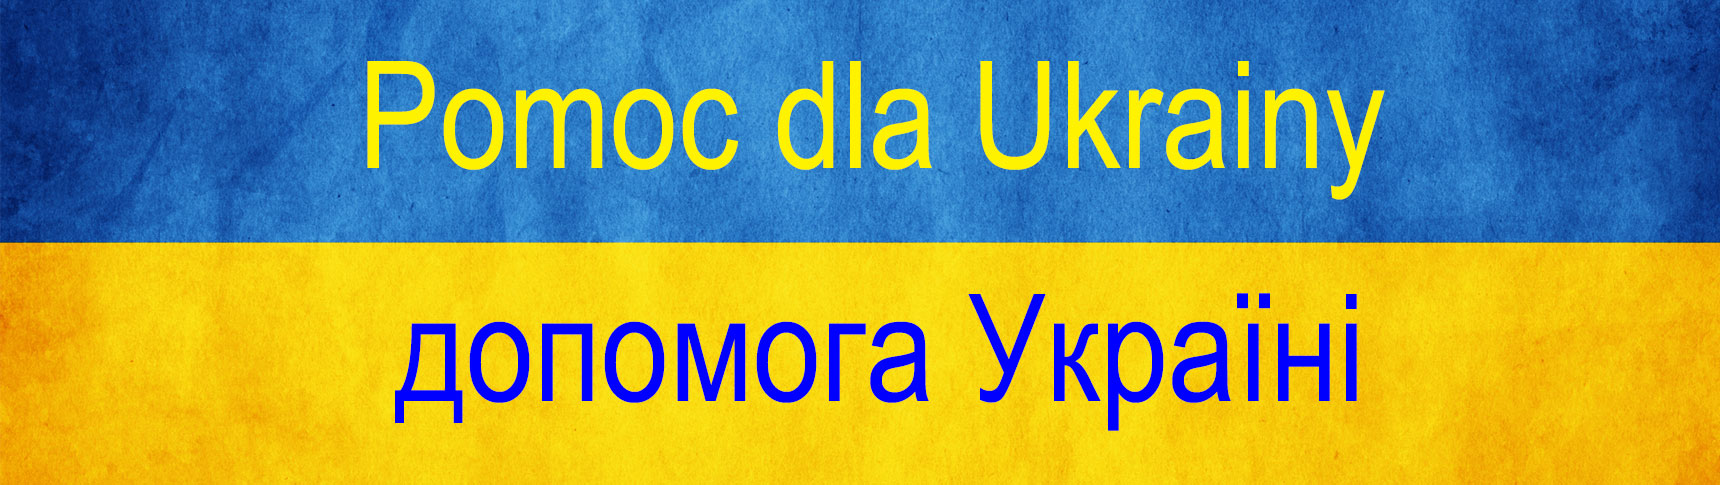 Obrazek dla: Wskazówki dla obywateli Ukrainy dot. podejmowania pracy w Polsce na spotkaniu w UG Żukowo